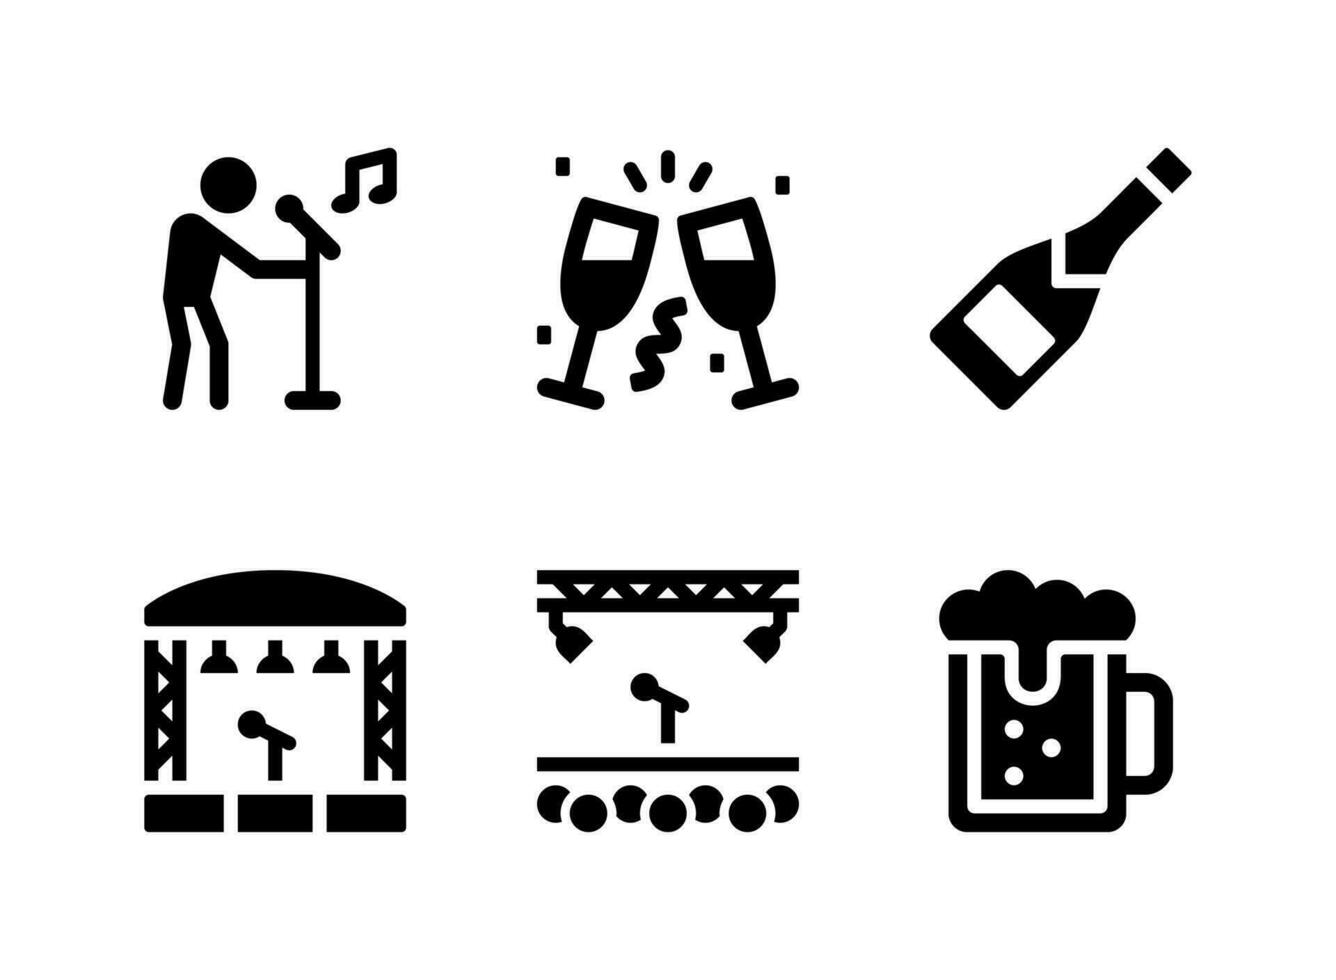 conjunto simples de ícones sólidos de vetor relacionados a festa. contém ícones como karaokê, brindes, garrafa de vinho e muito mais.